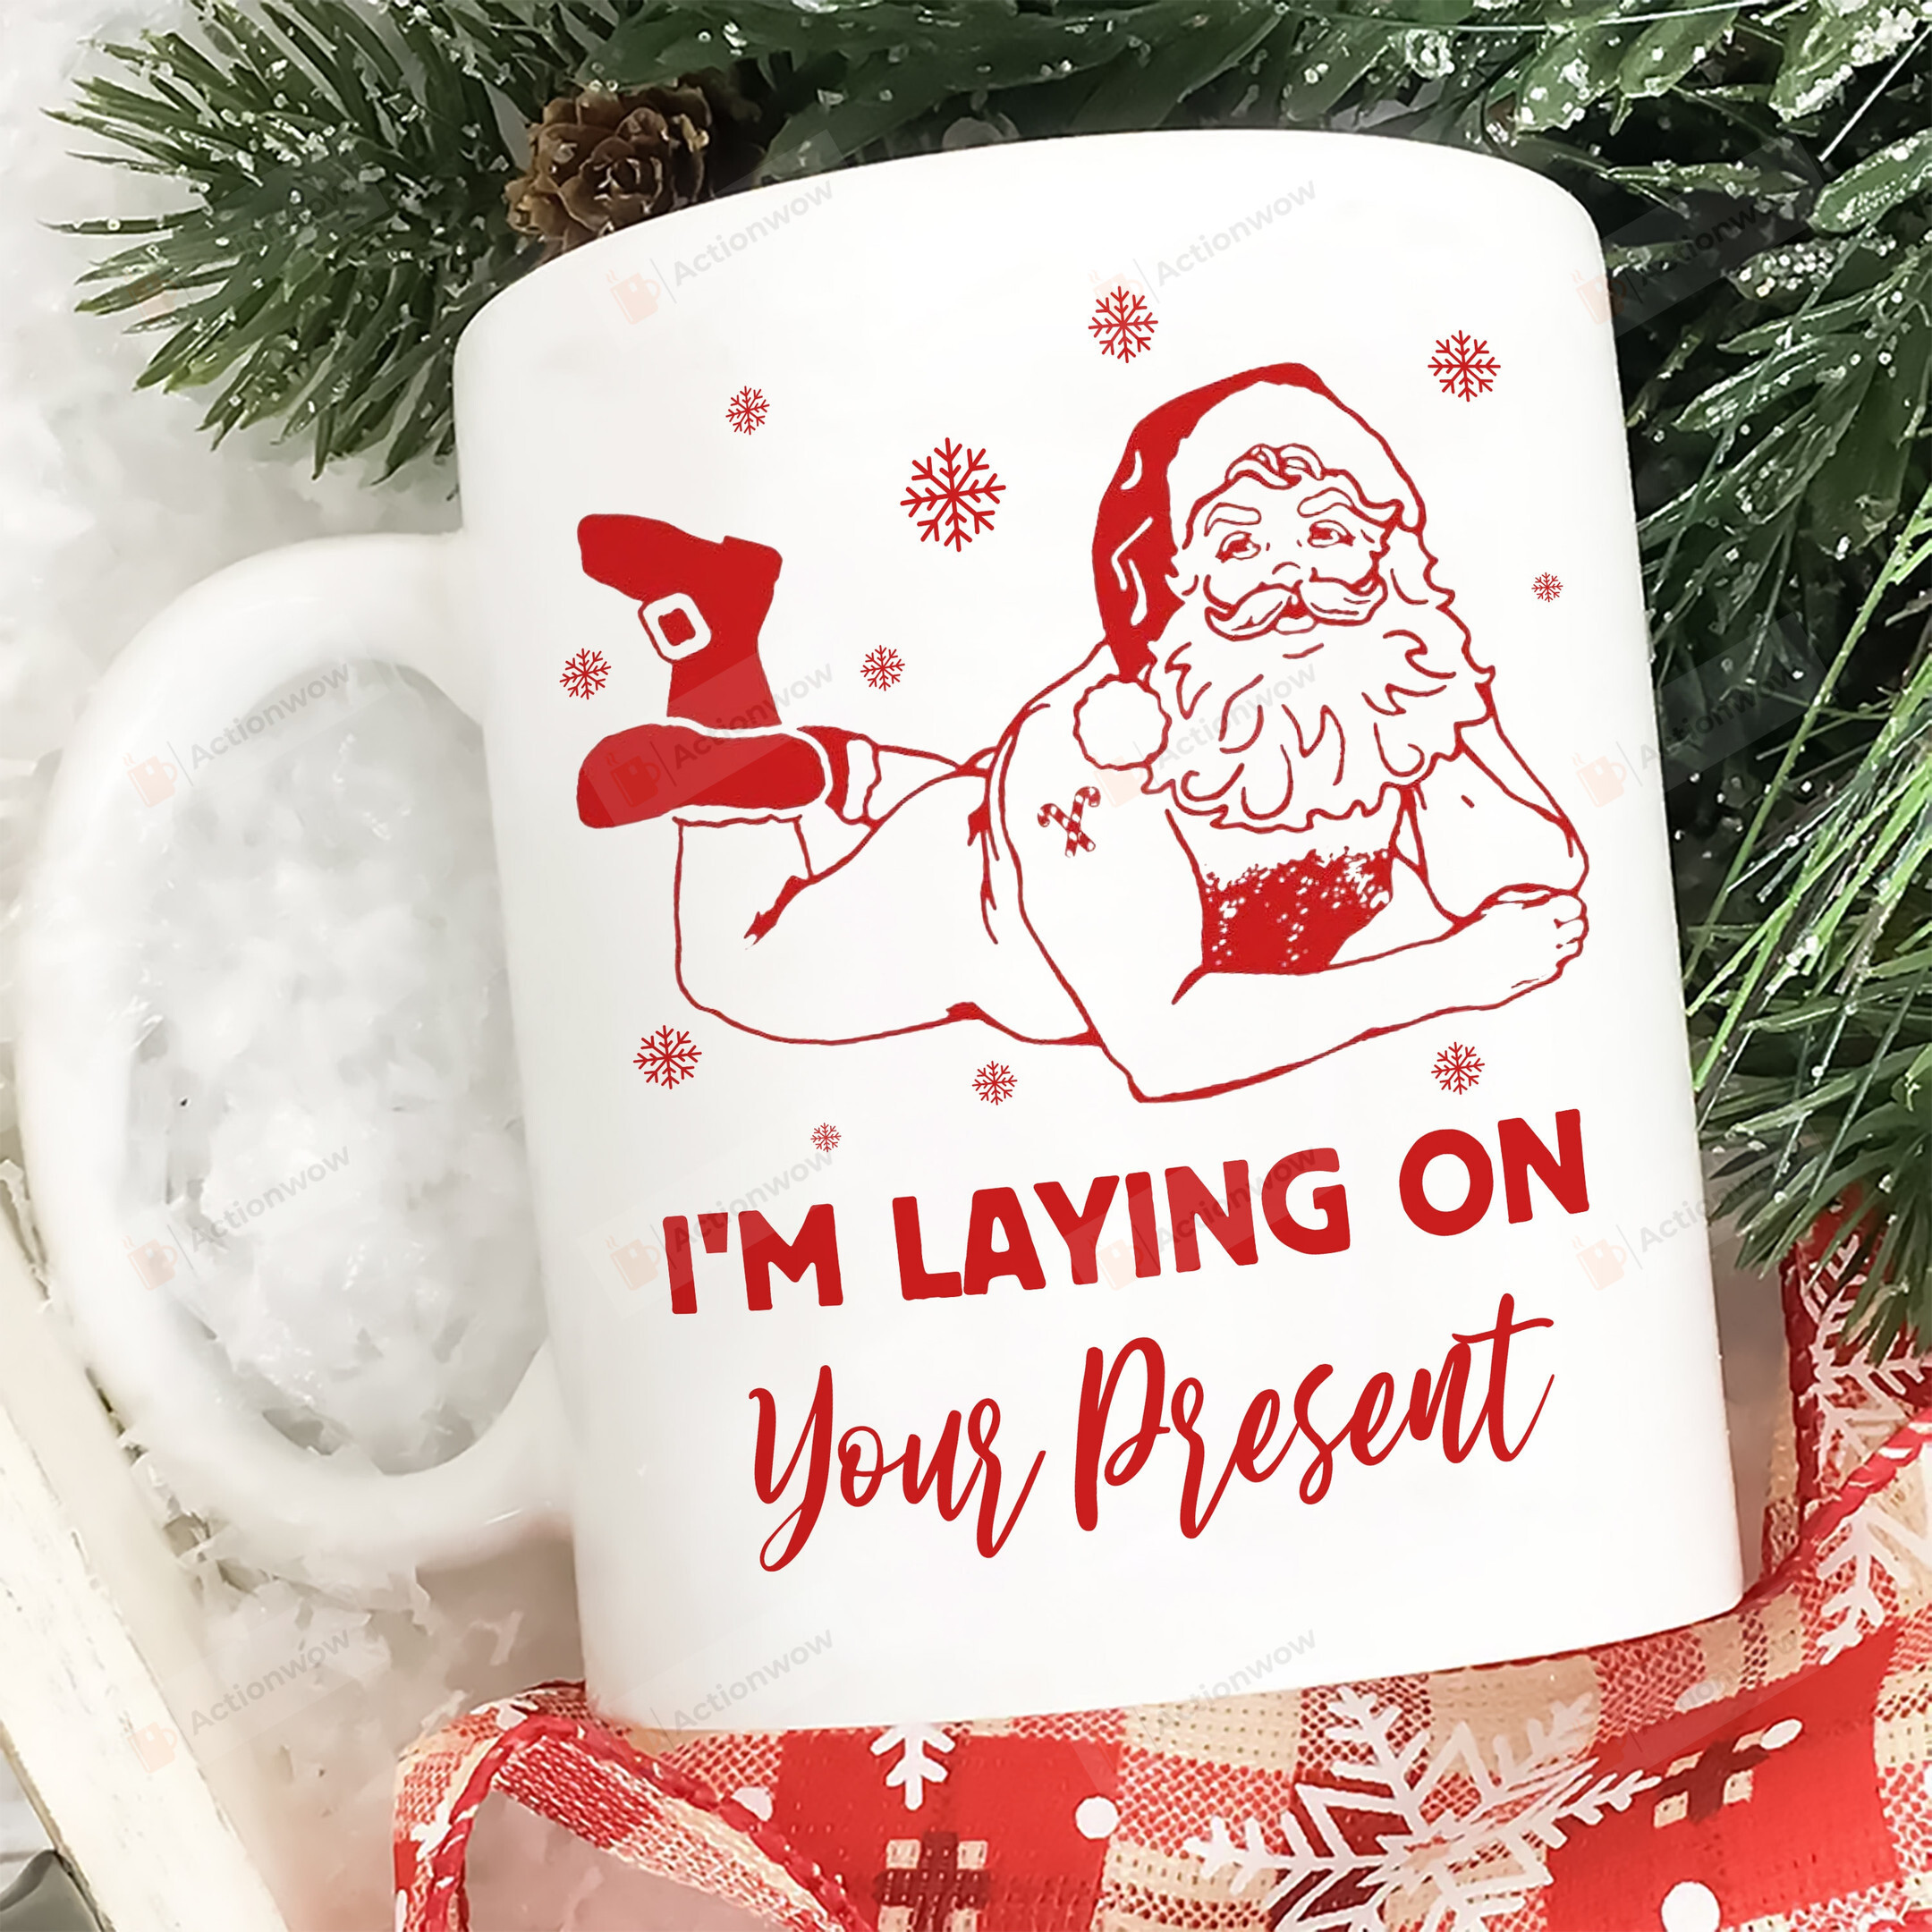 I'm Laying On Your Present Mug, Naughty Santa Claus Mug, Dirty Offensive Christmas Mug